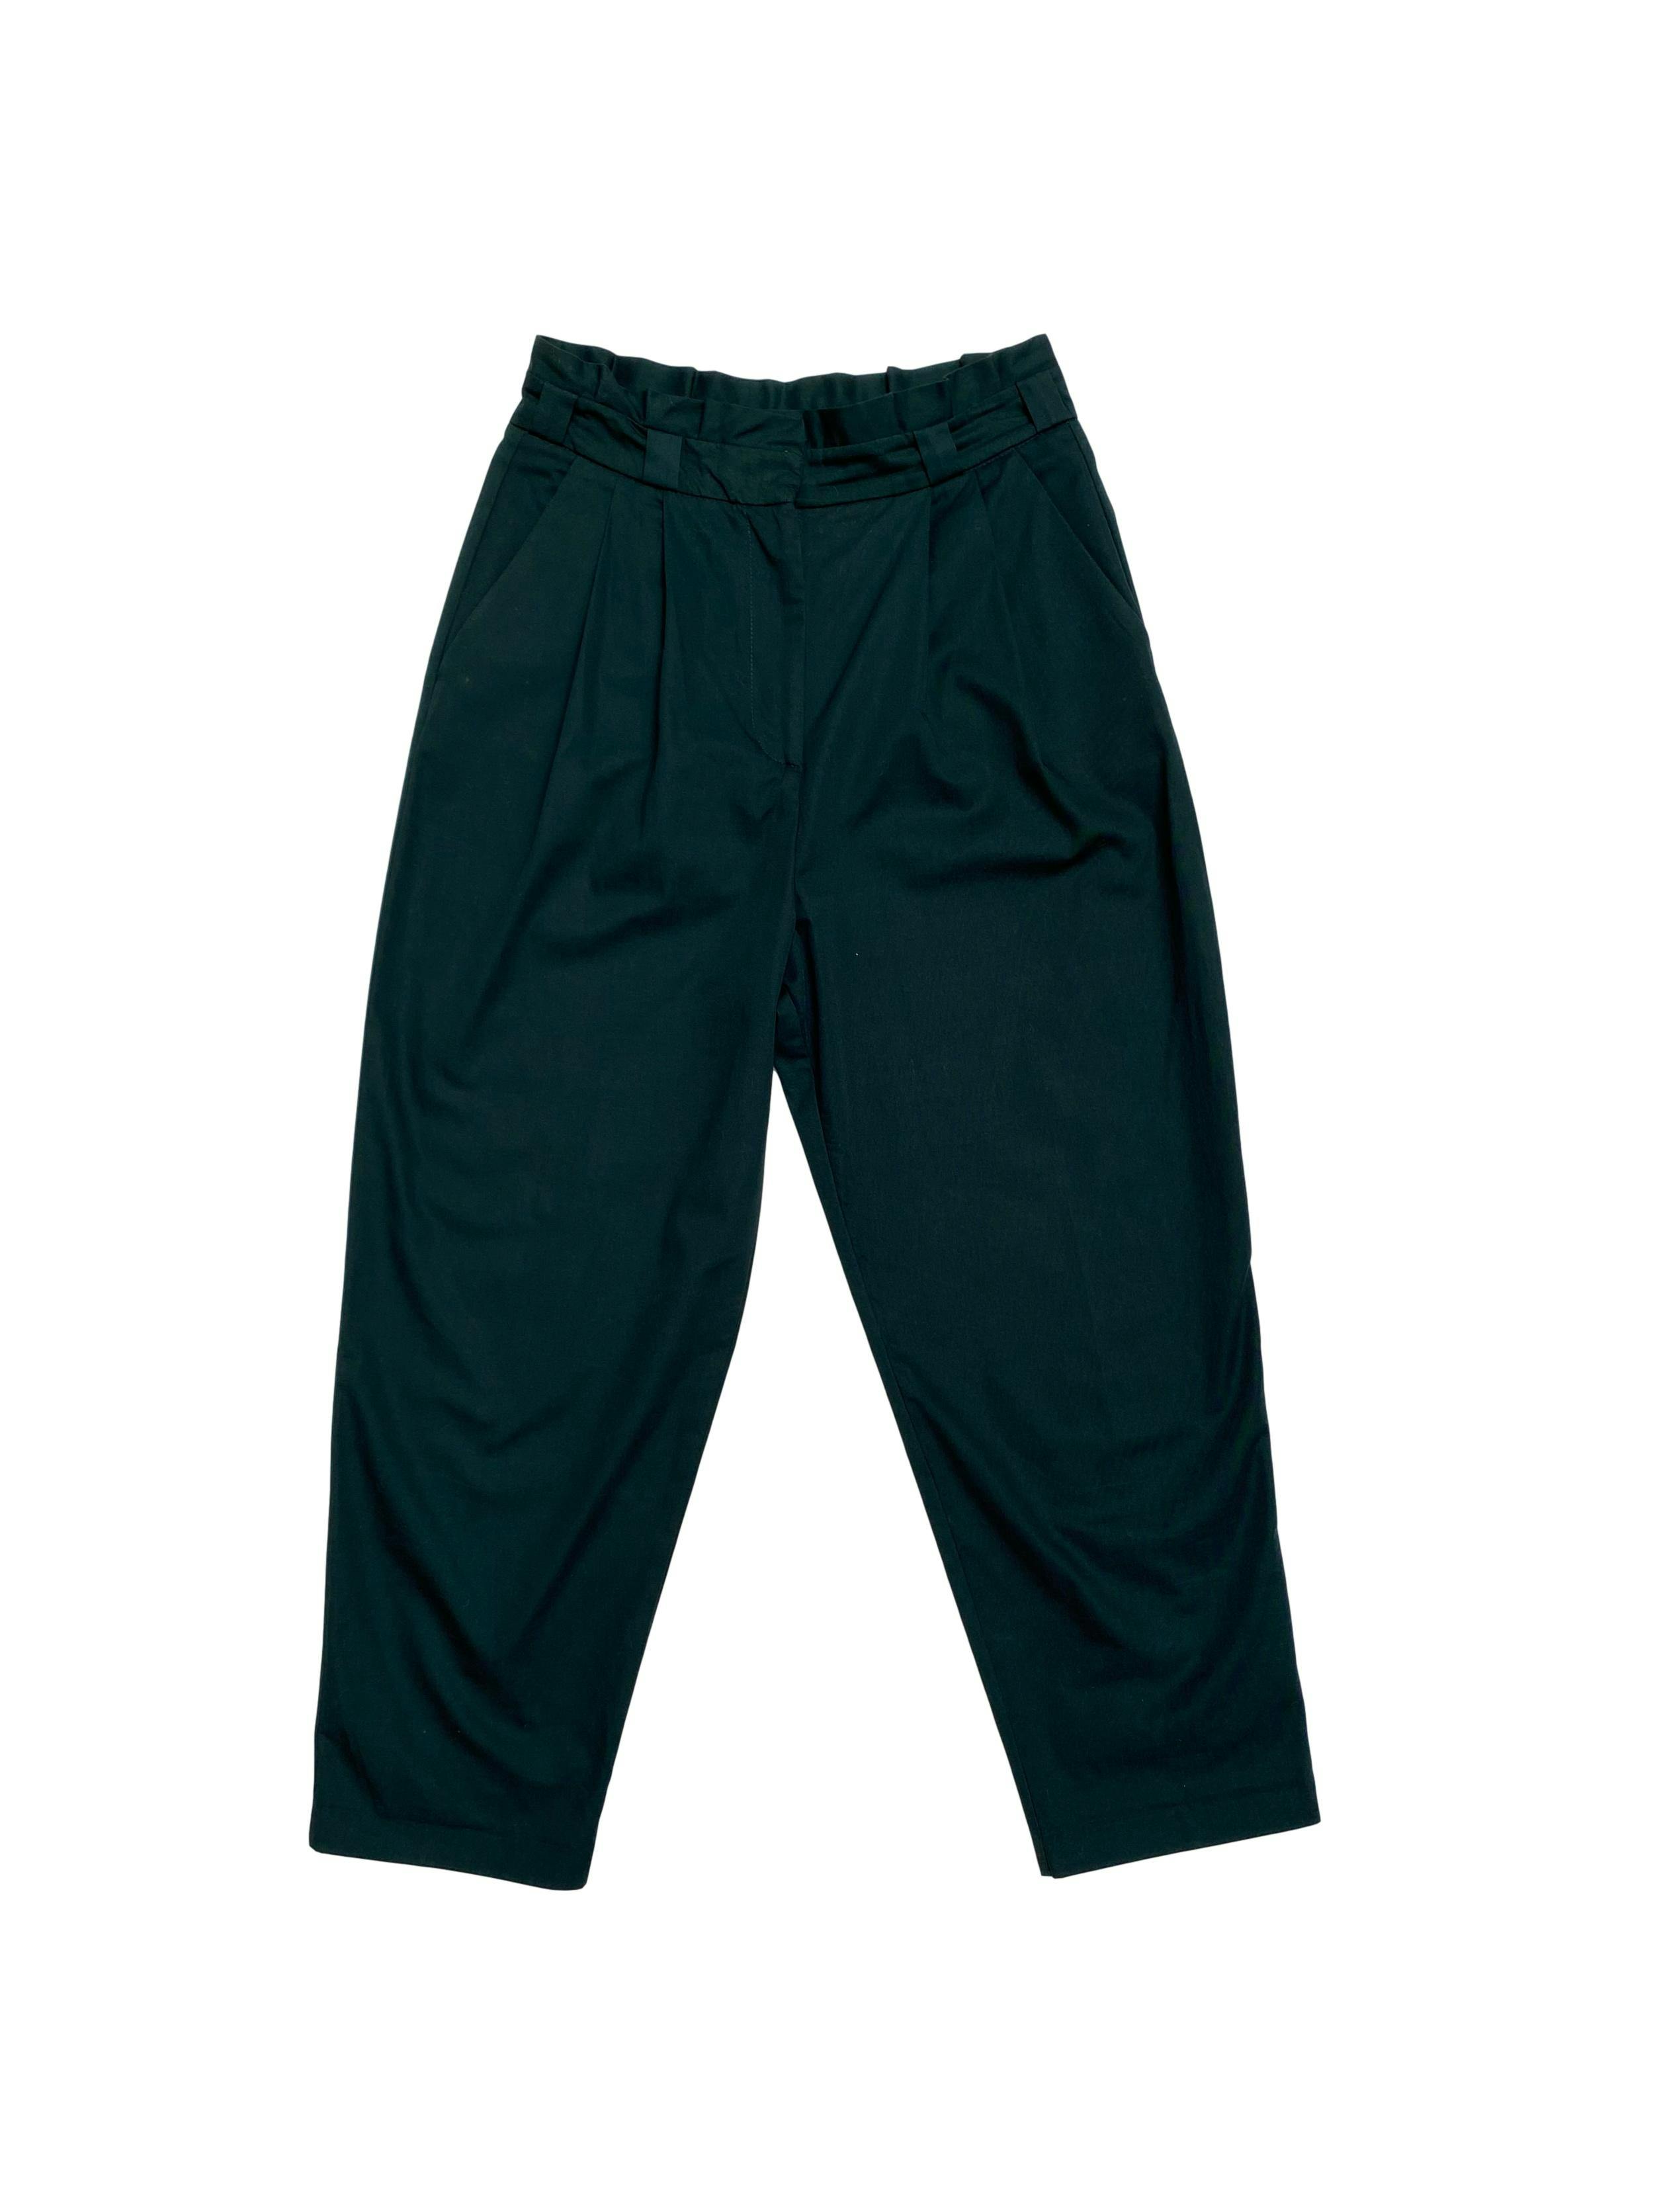 Pantalón Zara slouchy 100% algodón verde con bolsillos laterales. Cintura 76cm